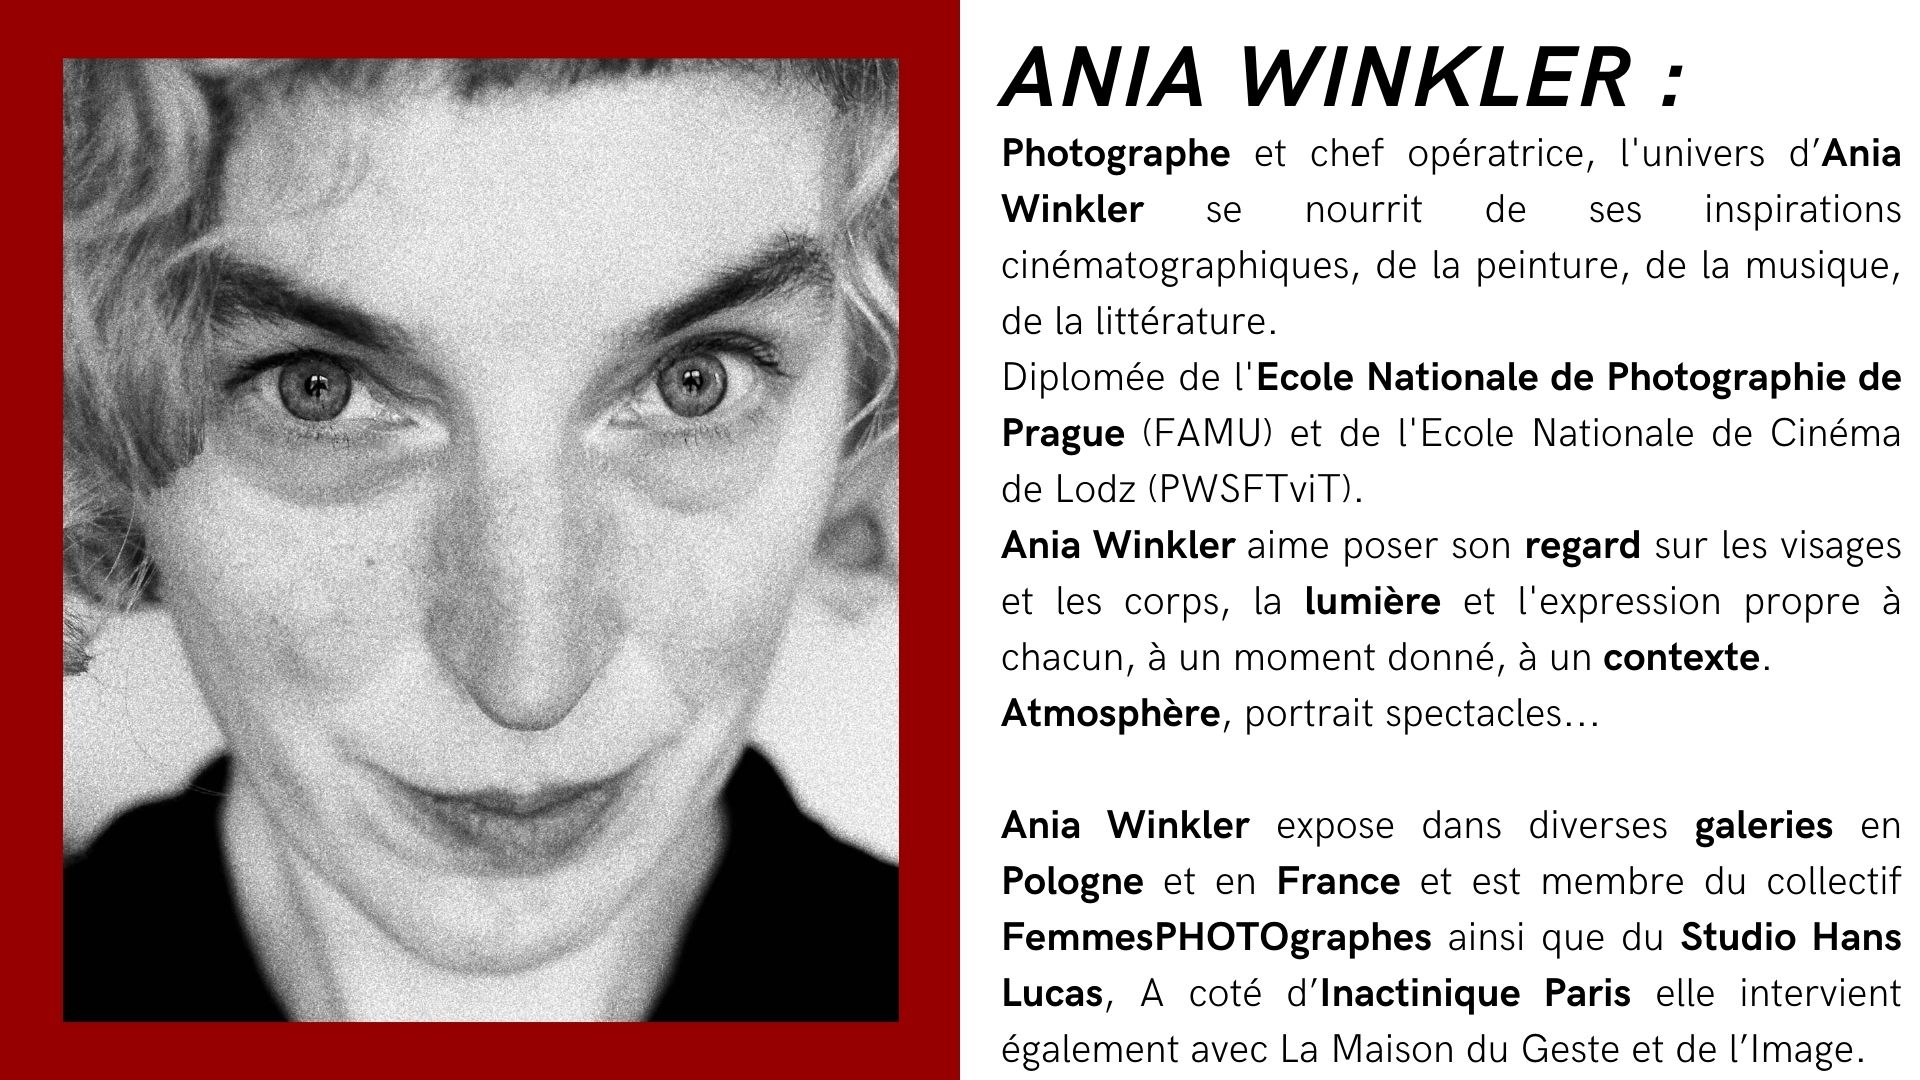 Ania Winkler with Inactinique Paris workshop argentique